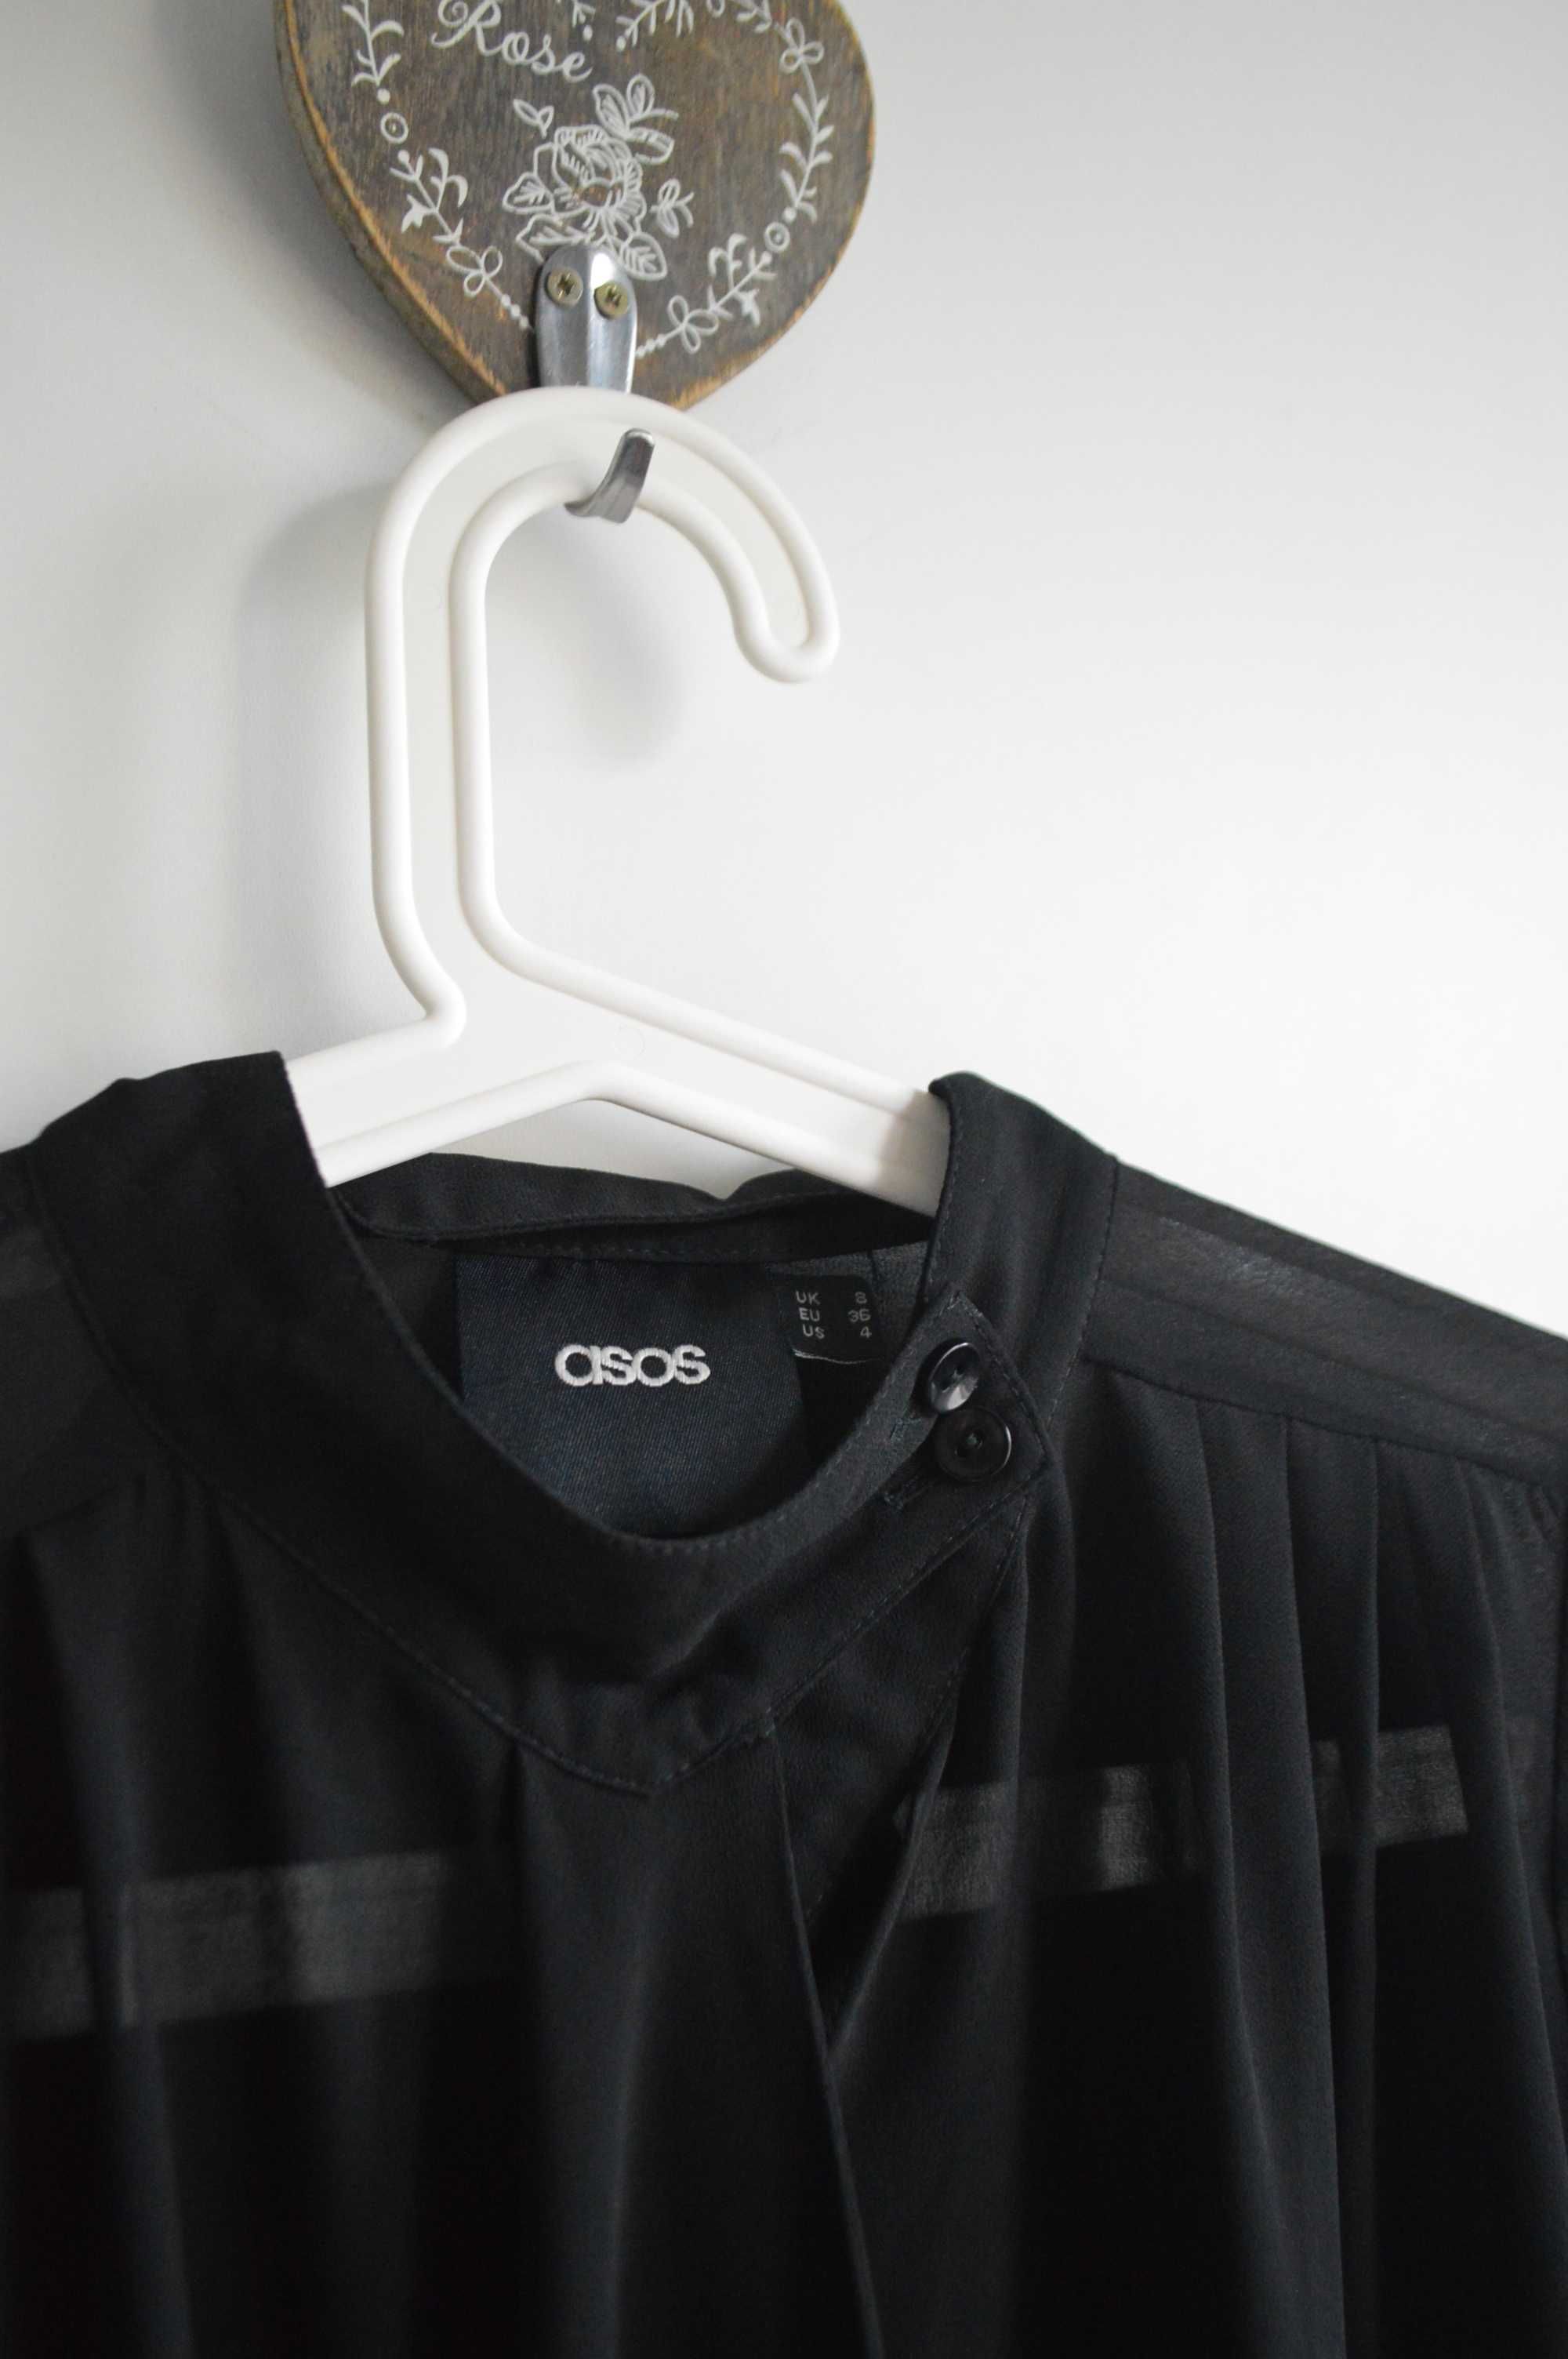 ASOS koszula bluzka czarna M minimalizm elegancka koszula